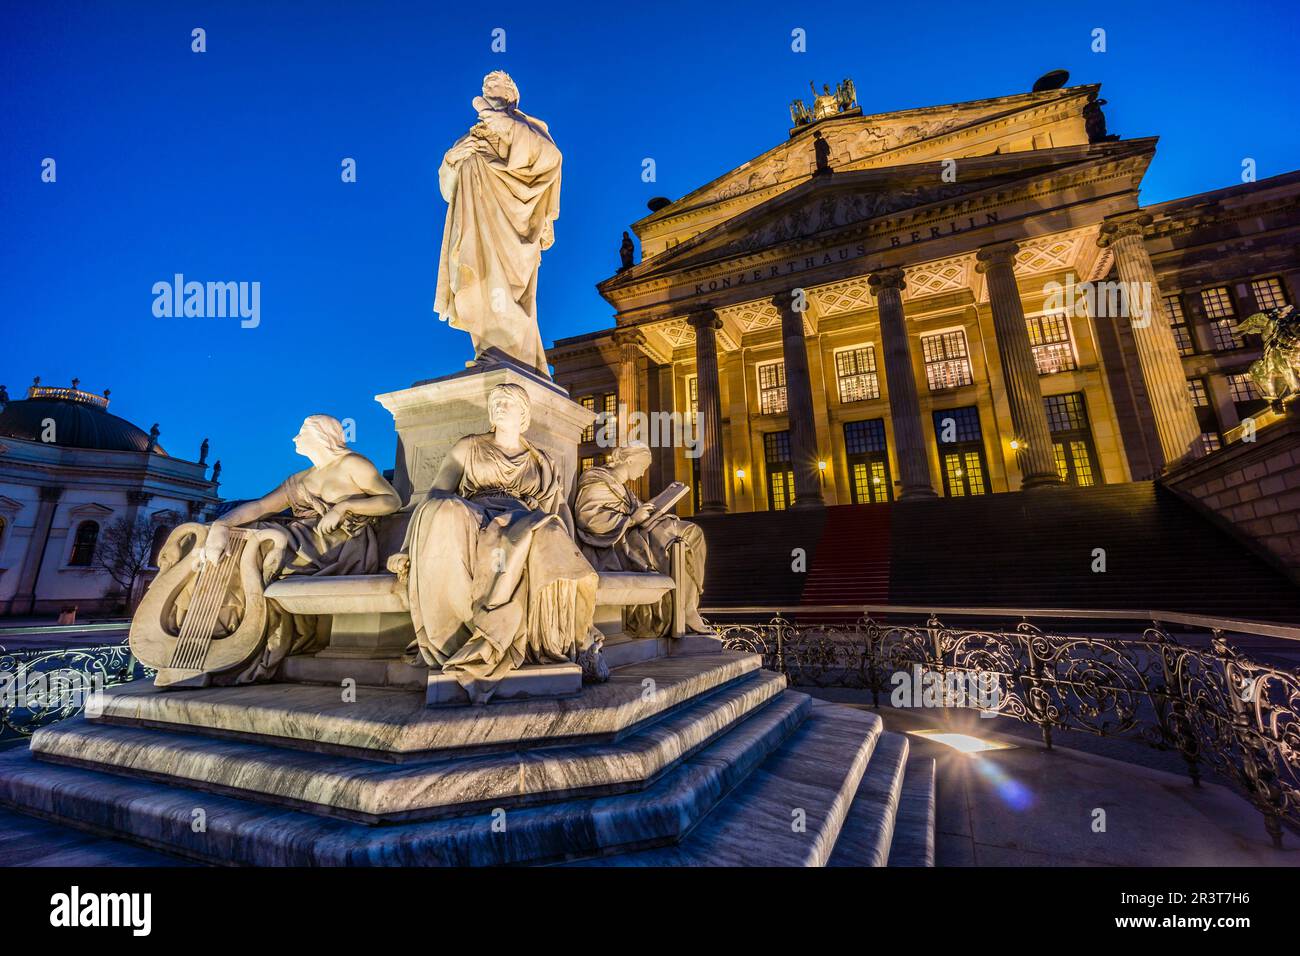 Monumento a Schiller frente al Konzerthaus y Deutscher Dom (Catedral Alemana). Gendarmenmarkt (Mercado de los Gendarmes) , Berlino, Alemania, europa. Foto Stock